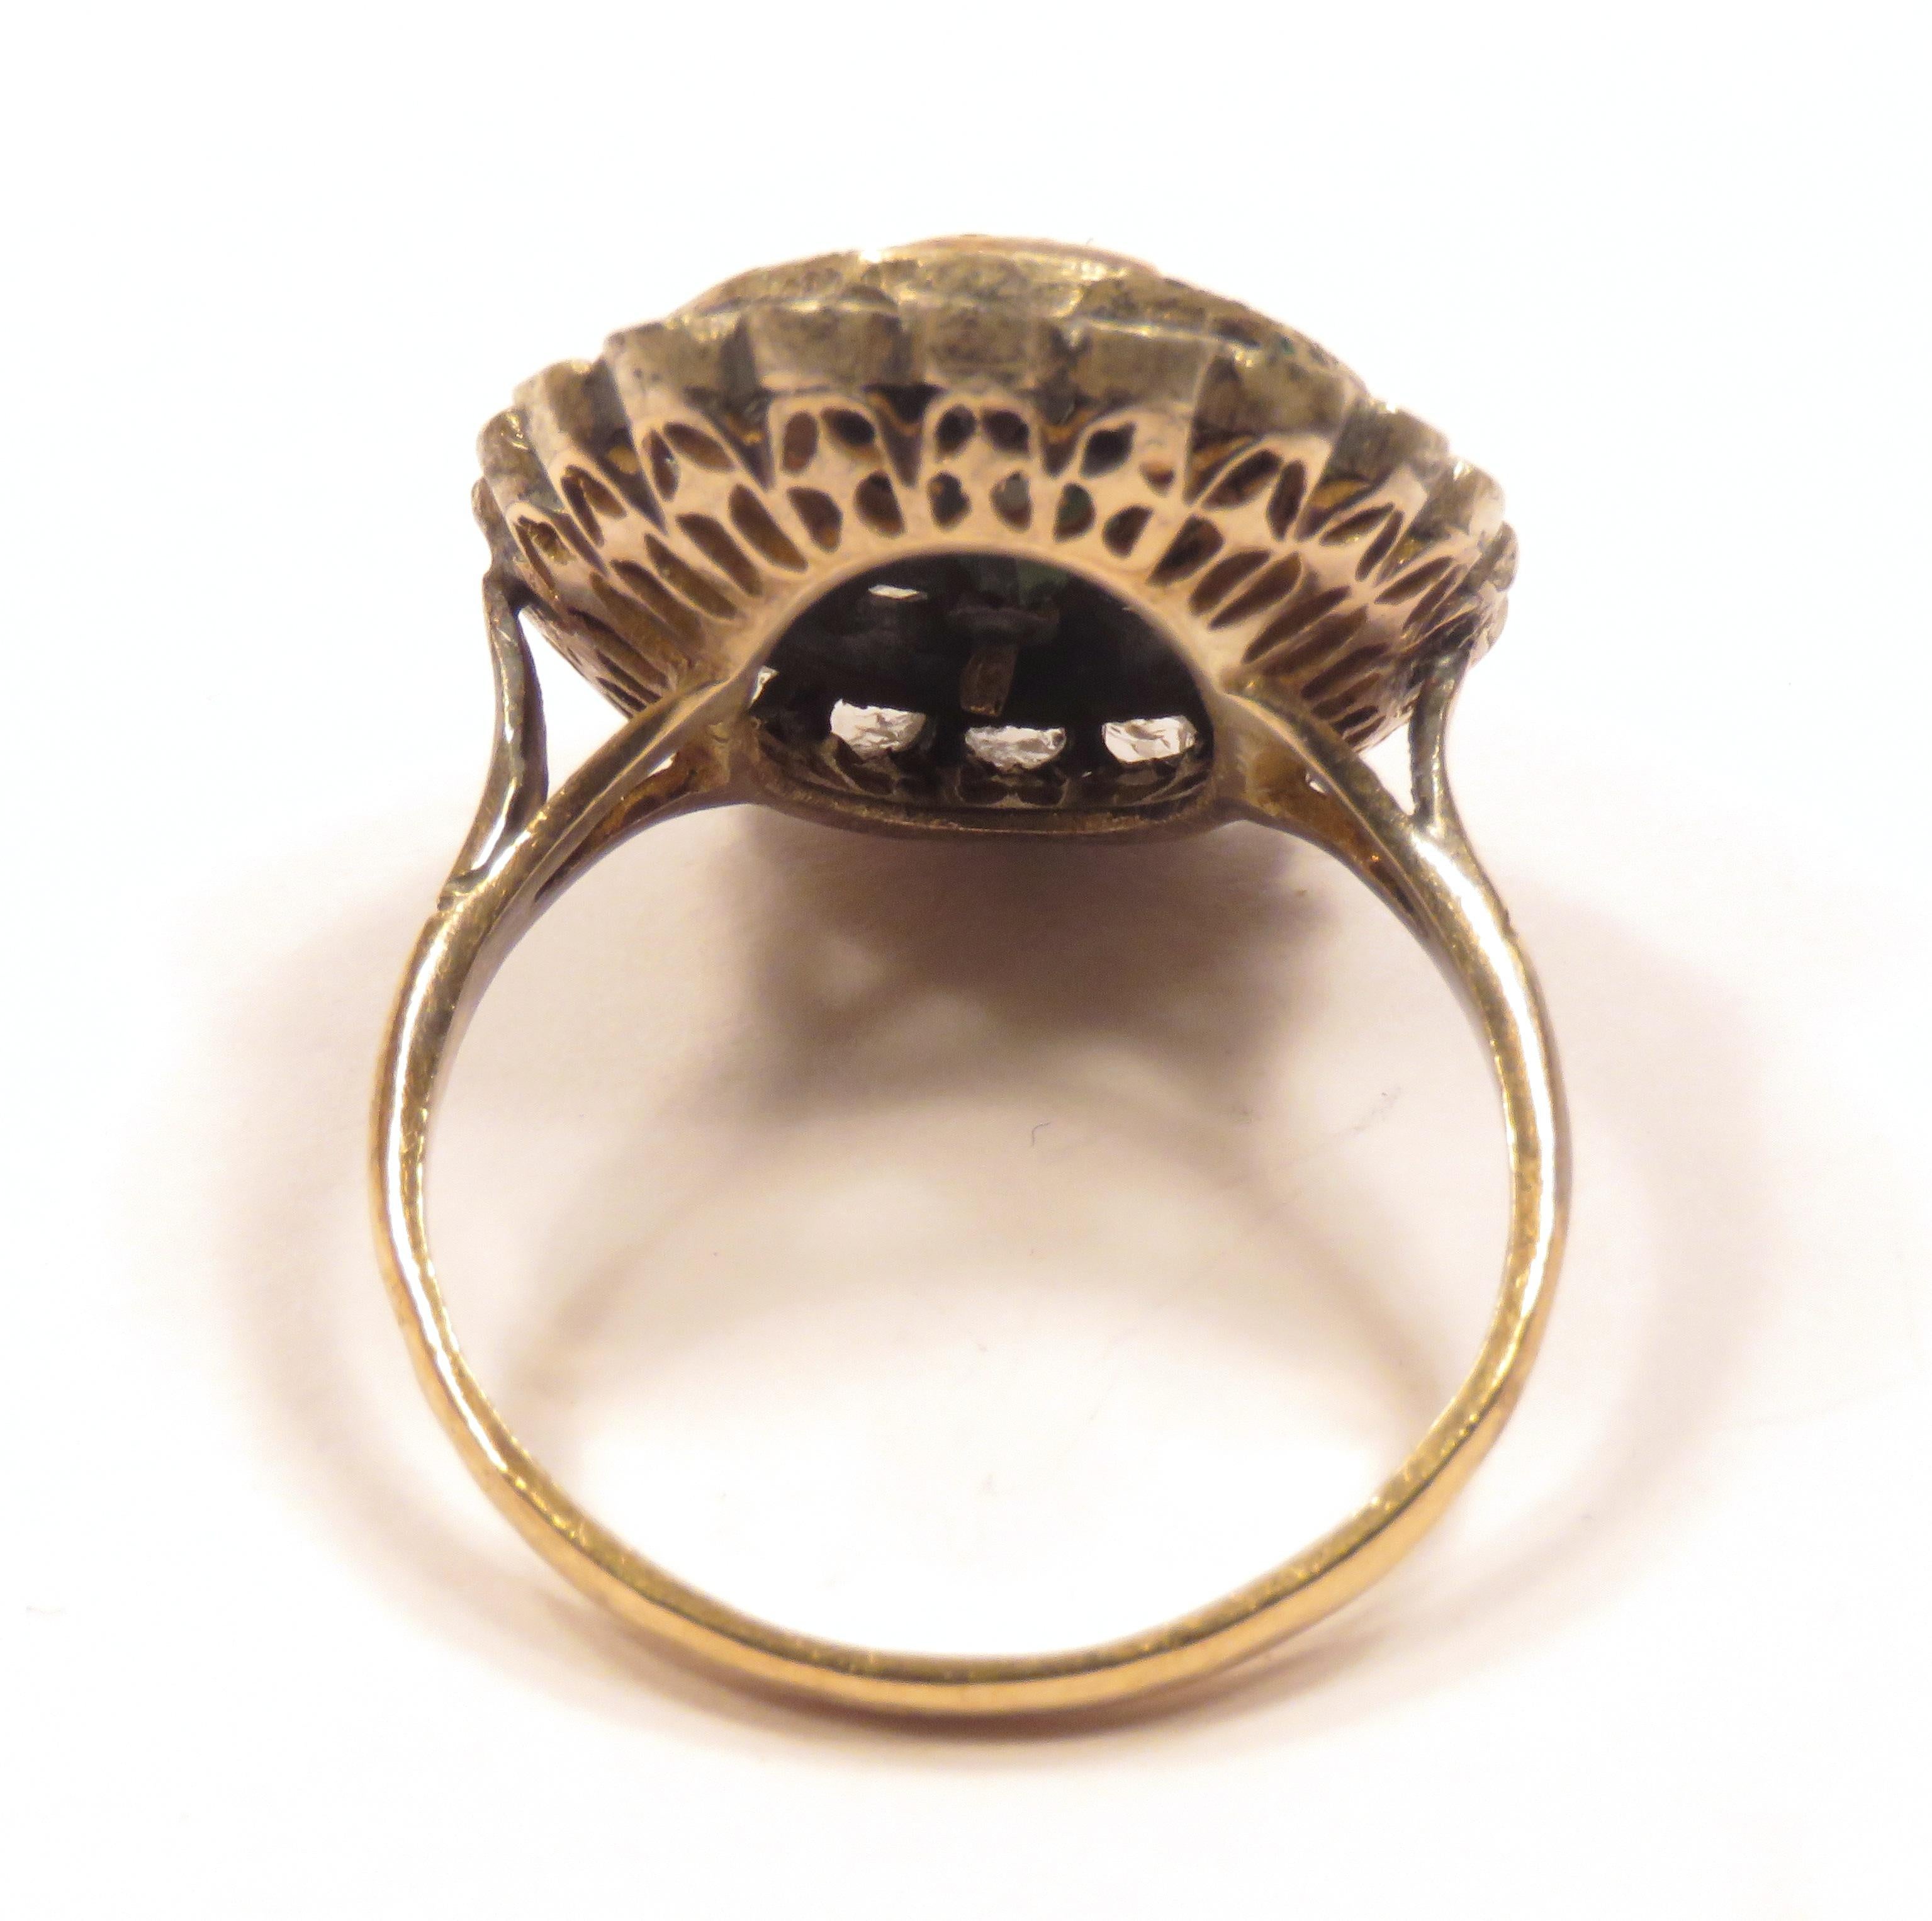 Antiker Kuppelring aus Silber und Gelbgold mit 40 Diamanten im Rosenschliff und einem ovalen Saphir. Dieser Vintage-Ring stammt aus den frühen 1900er Jahren.
Die Größe des ovalen Saphirs beträgt 9 x 6 Millimeter / 0,354331 x 0,23622 Zoll.
Die Größe